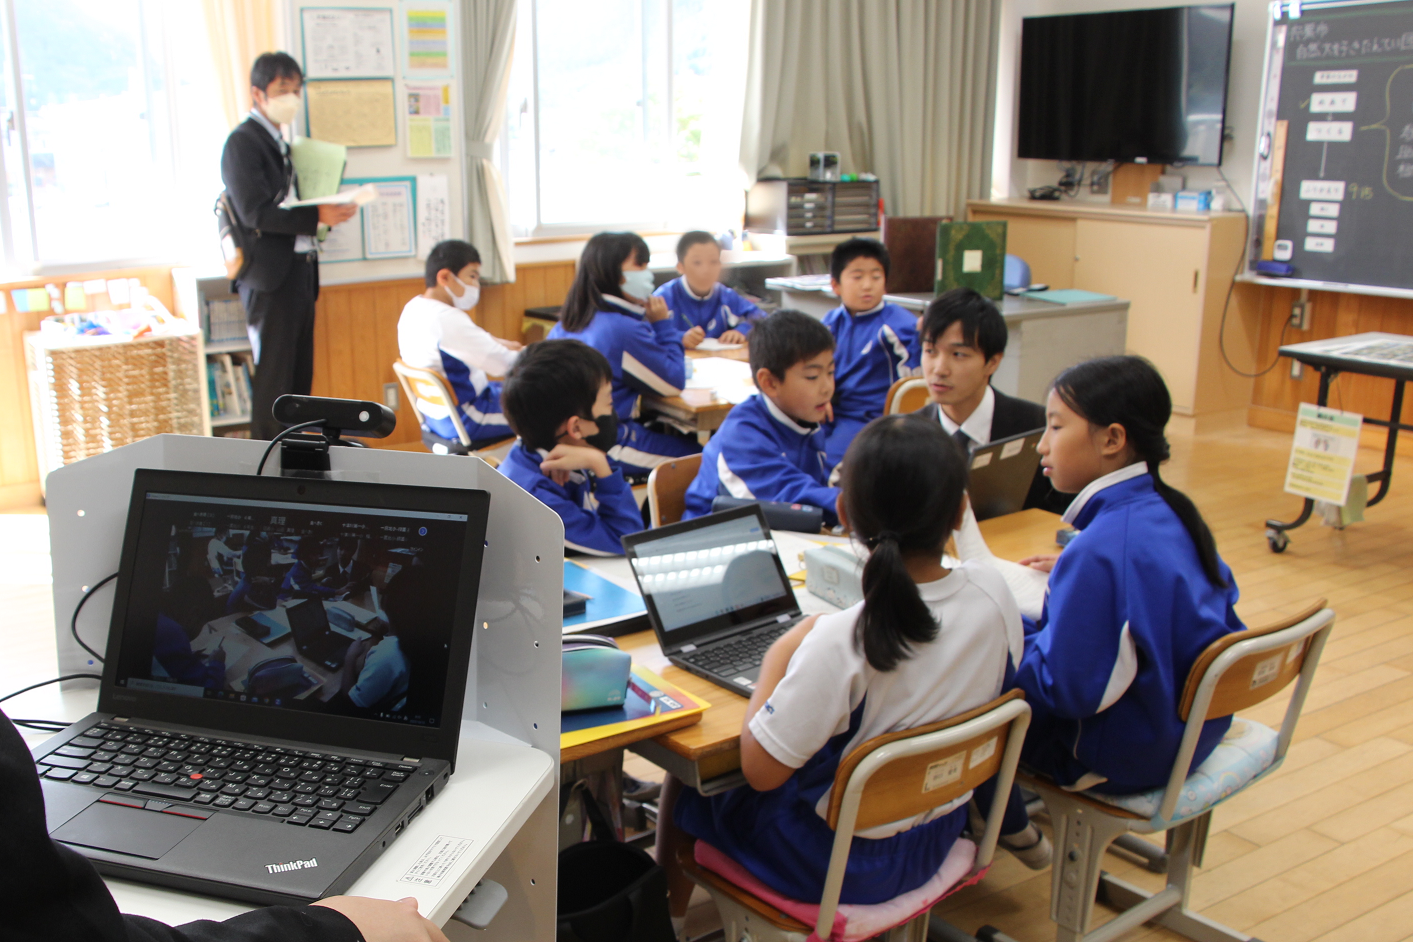 一宮北小学校で教室にオンライン配信するためのパソコンを置いて授業が行われている写真